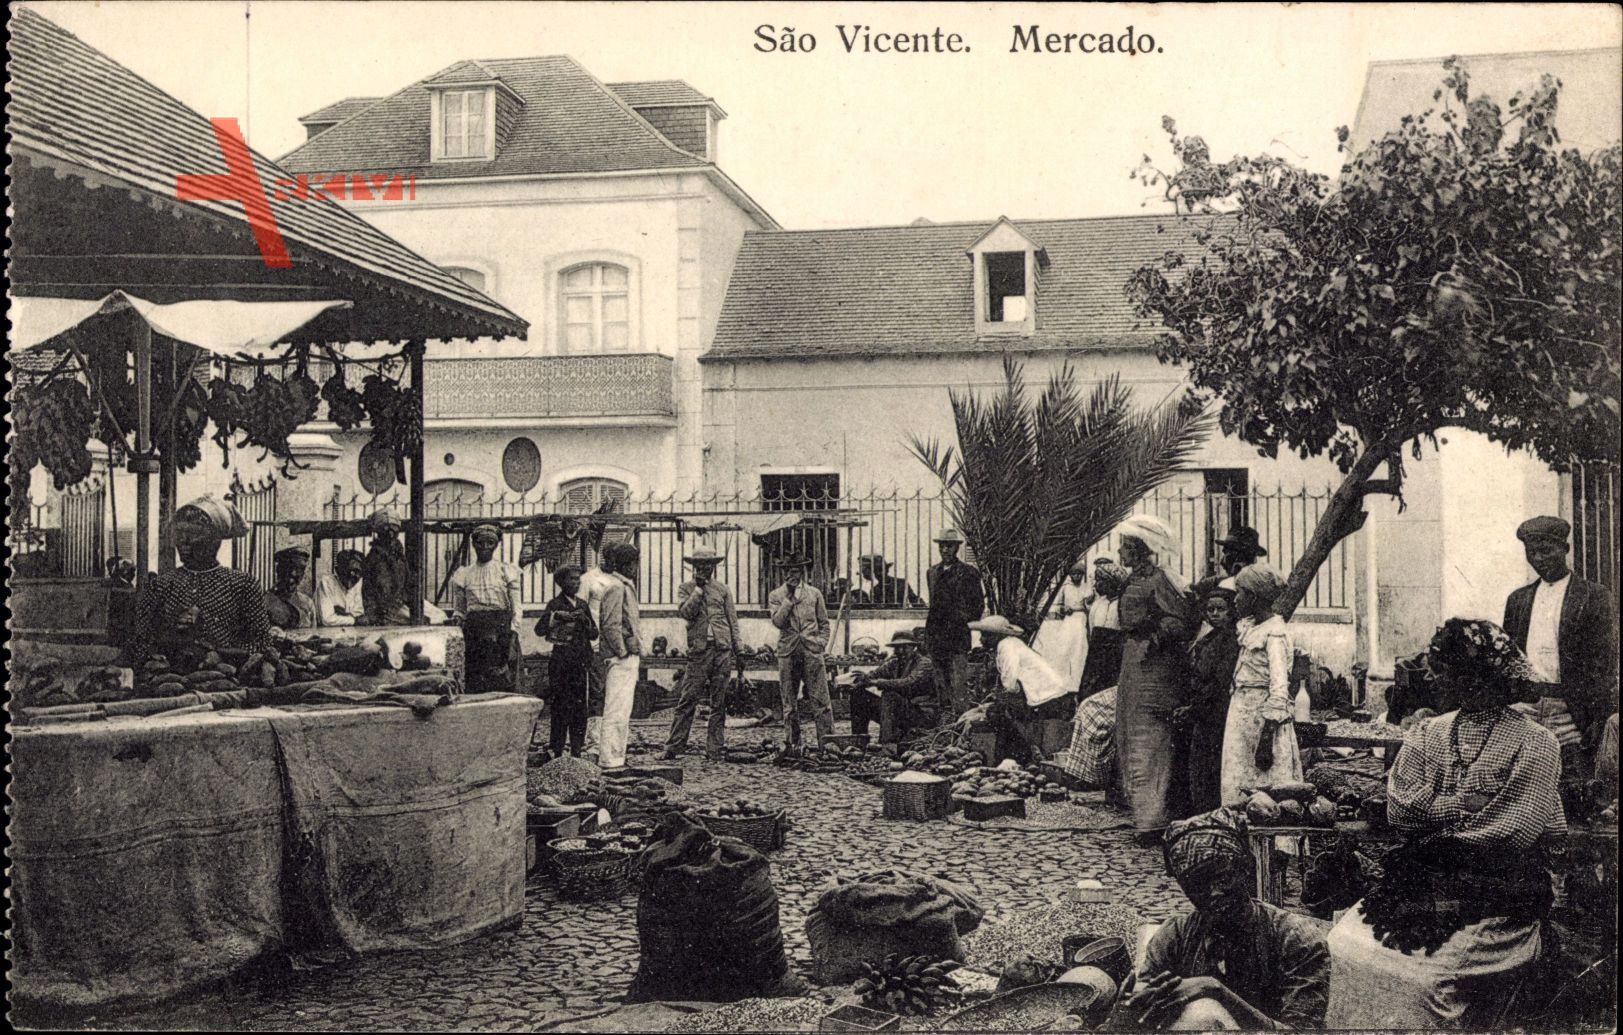 São Vicente Brasilien, Mercado, Marktplatz, Besucher